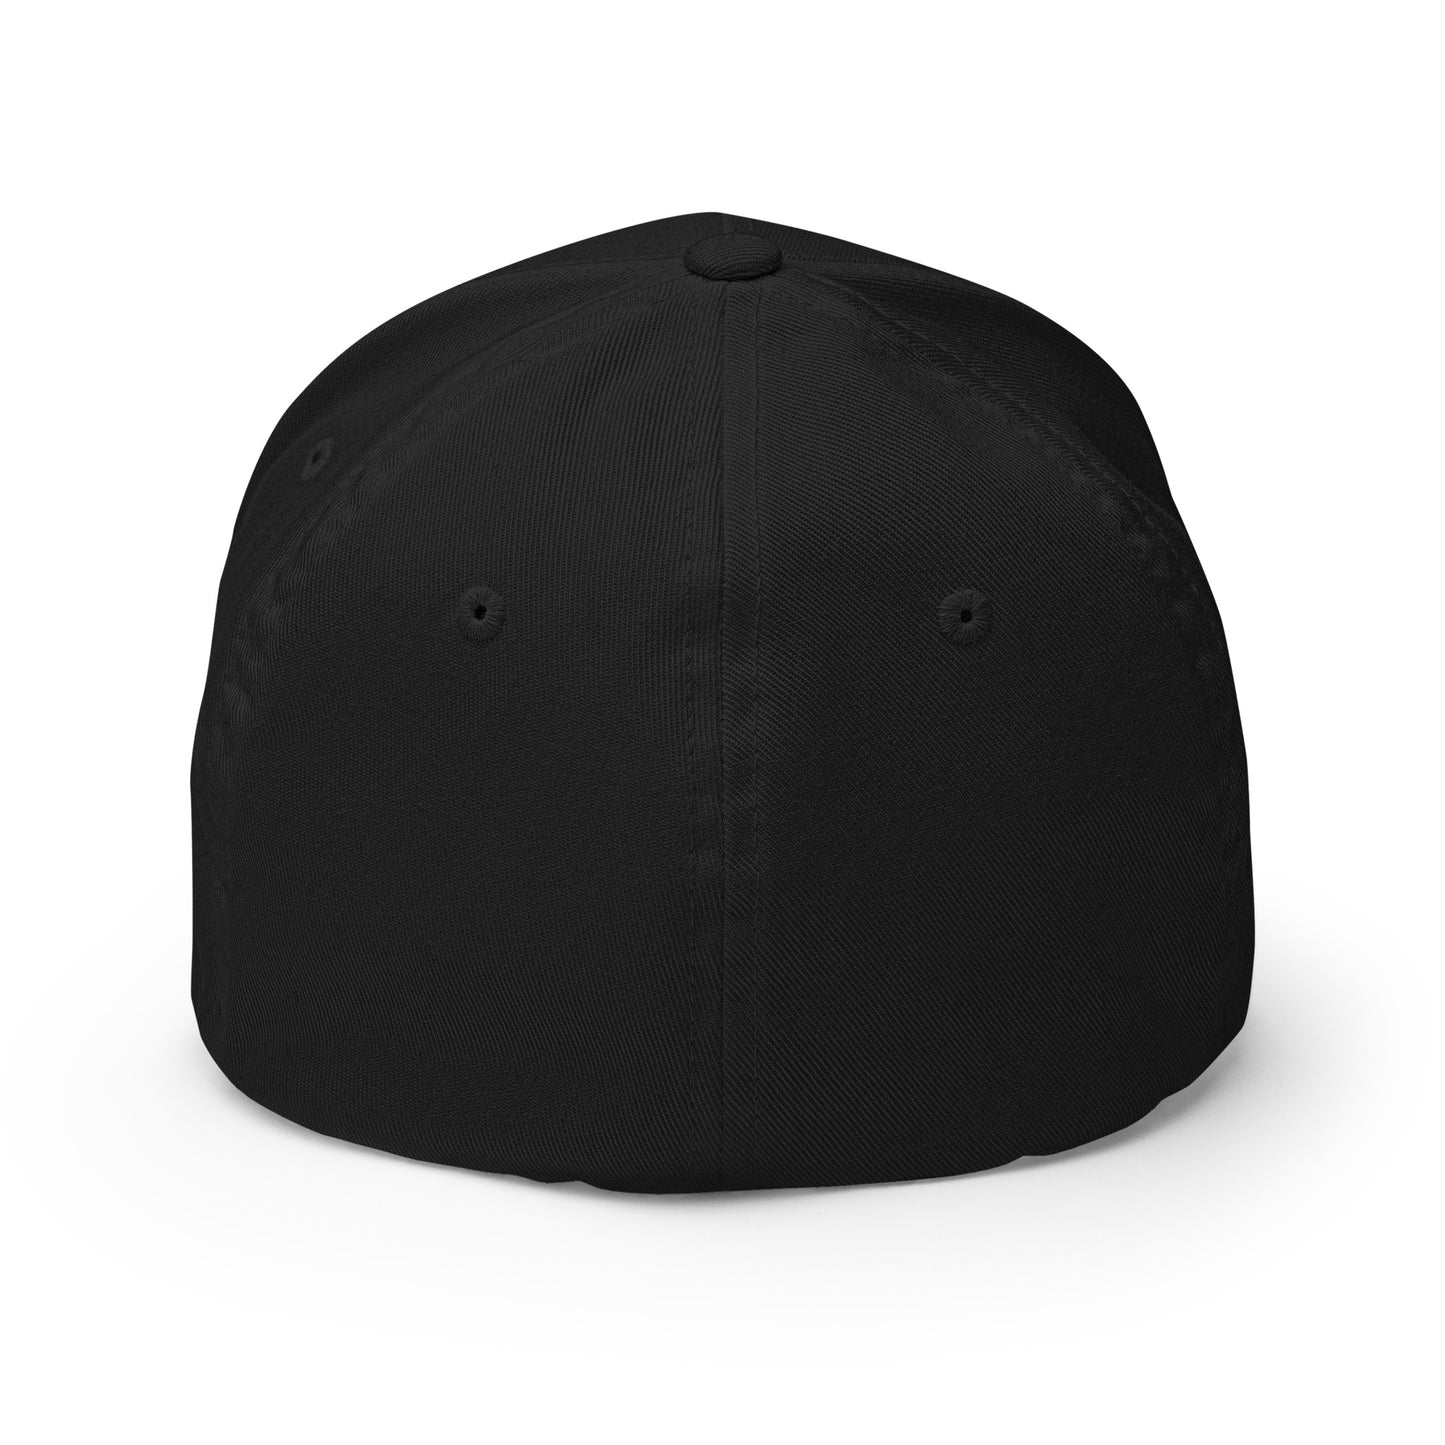 Sk8erboy® Flexfit baseball cap